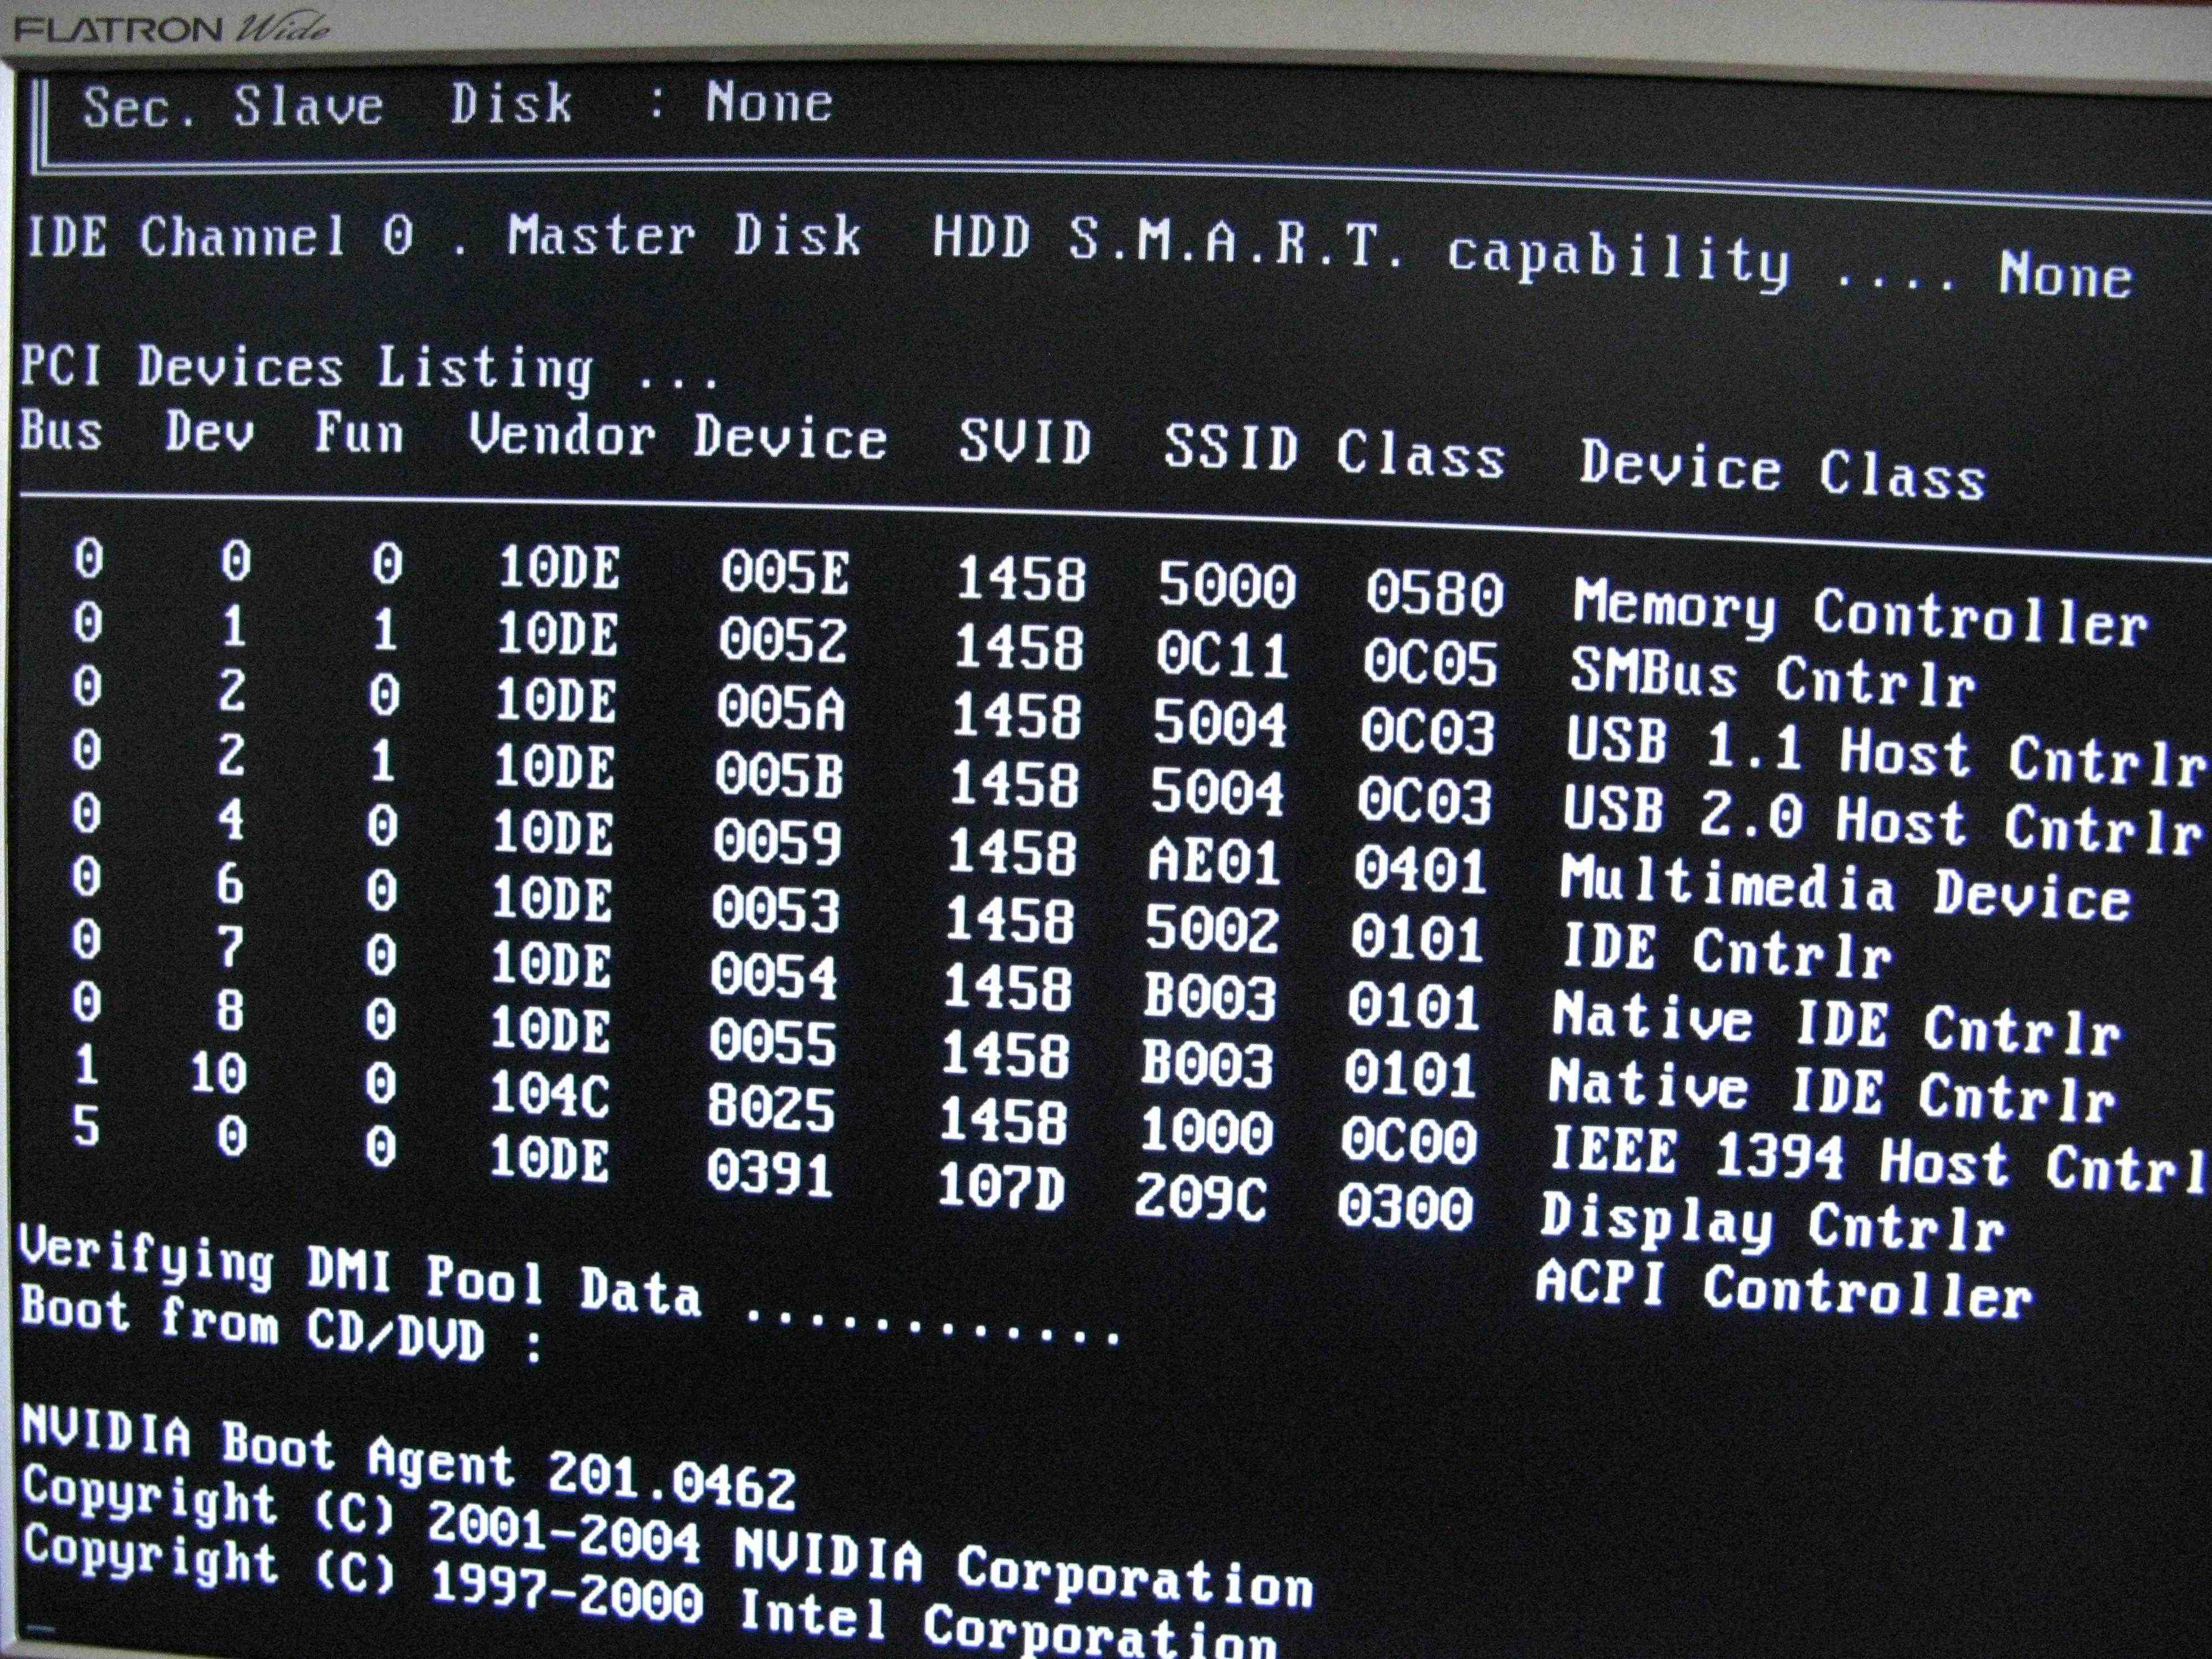 Компьютер не видит жесткий диск: что делать и как устранить проблему